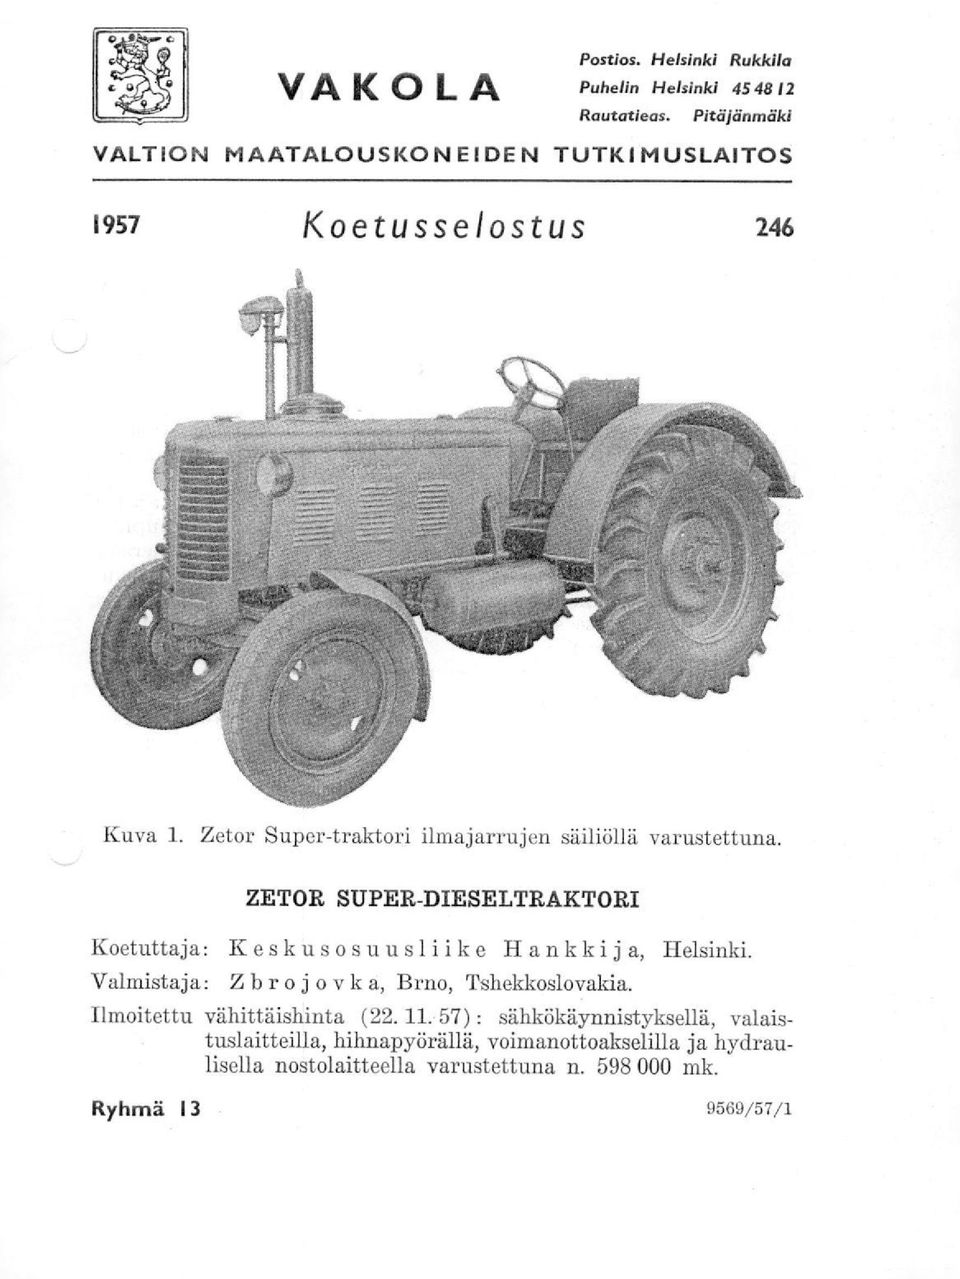 Zetor Super-traktori ilmajarrujen säiliöllä varustettuna. ZETOR SUPER-DIESELTRAKTORI Koetuttaja: Keskusosuusliike Hankkija, Helsinki.